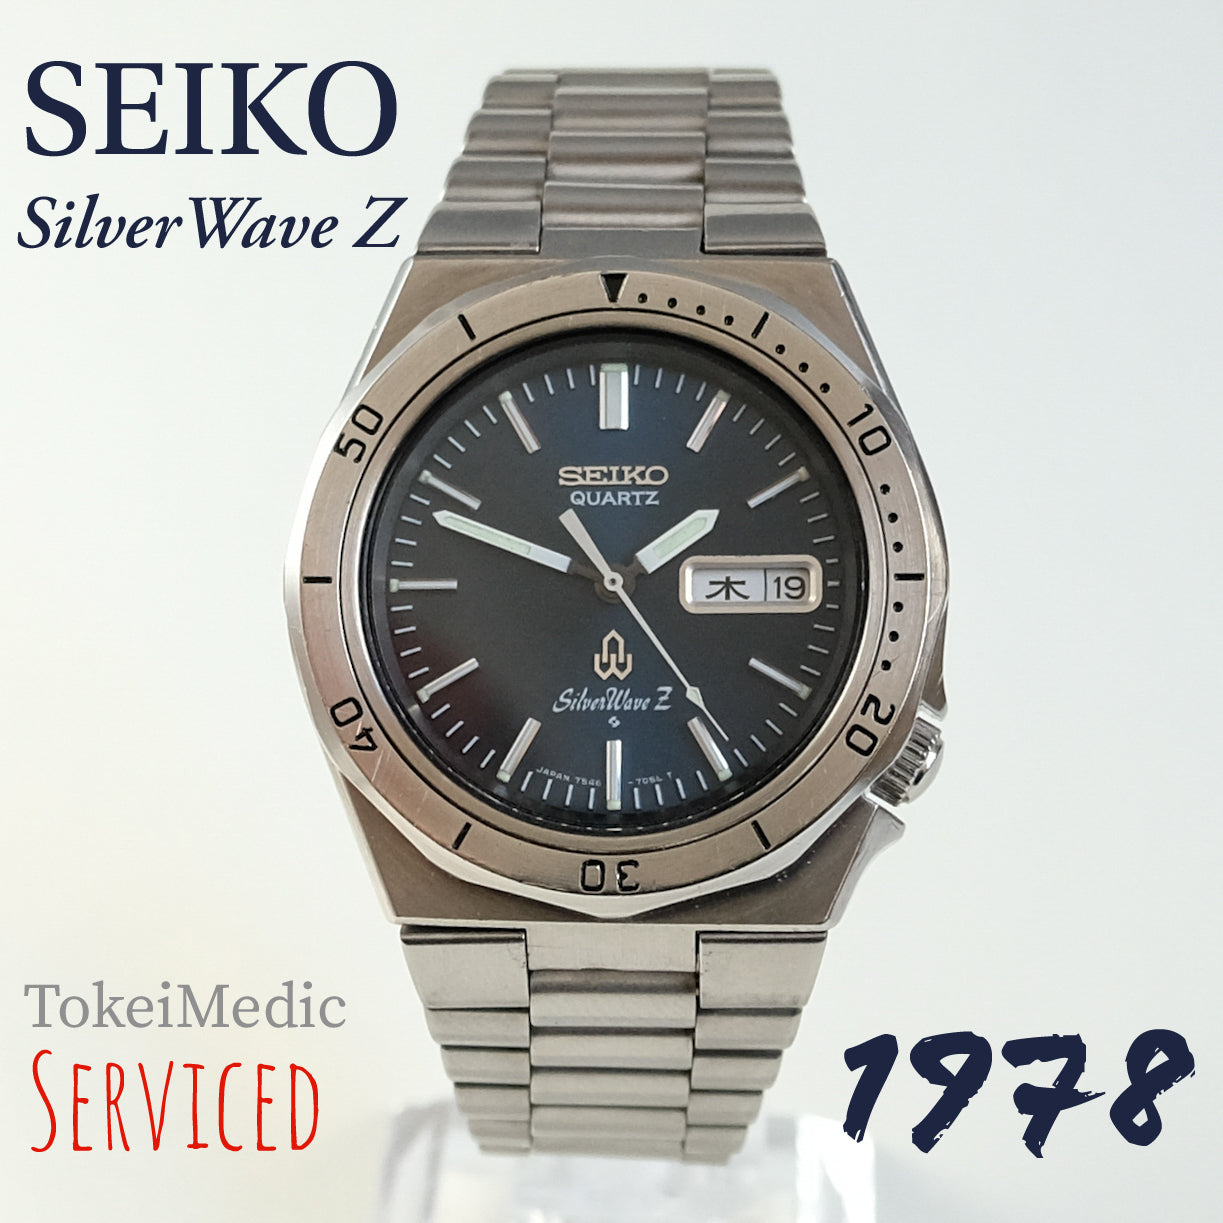 1978 Seiko Quartz SilverWave Z 7546-7040